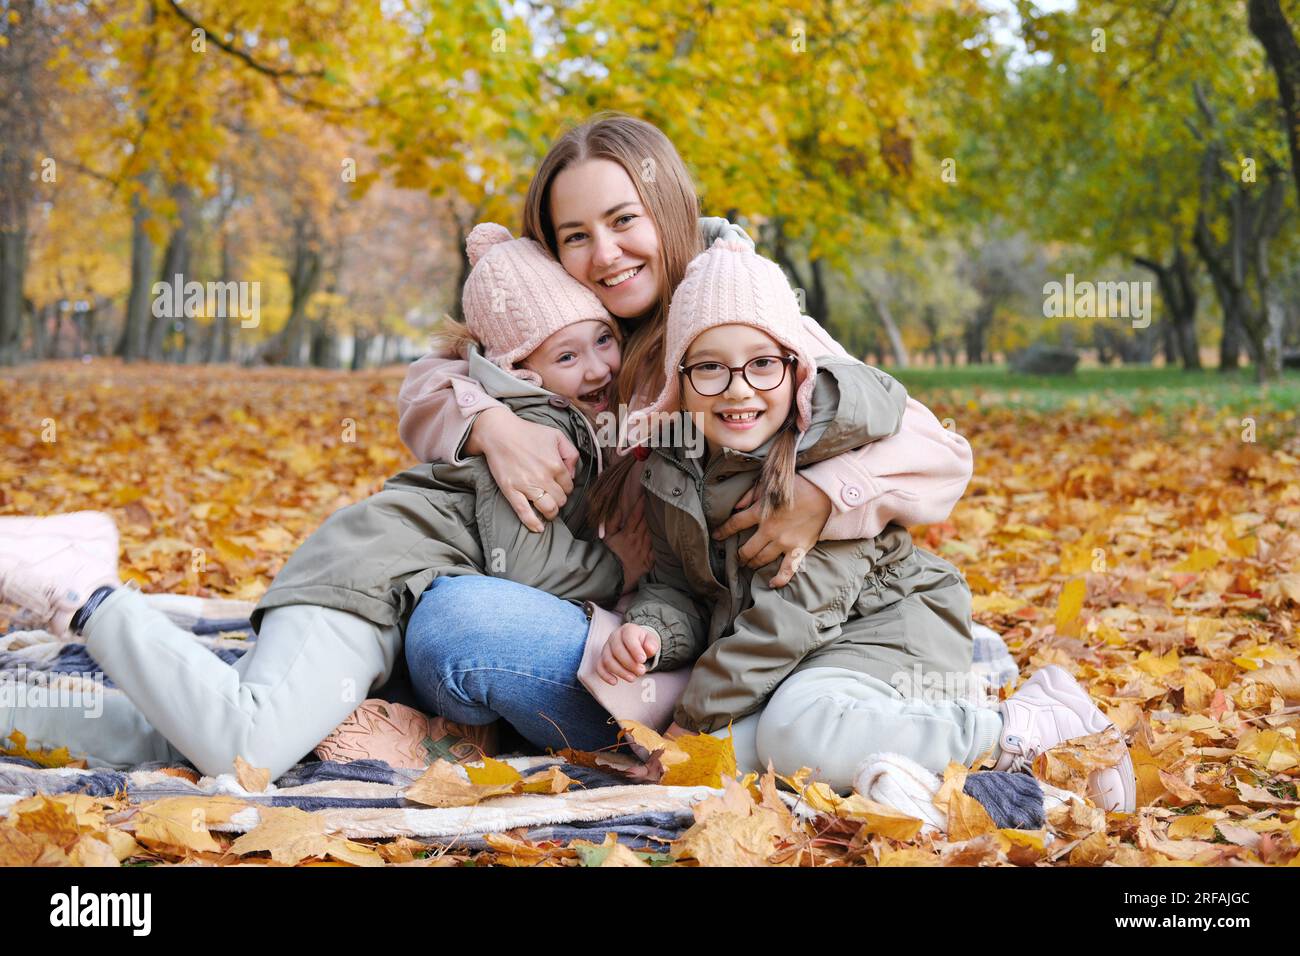 Eine glückliche Mutter mit ihren Zwillingstochter verbringt ihre Zeit damit, auf einer Decke in einem Herbstpark zu sitzen. Mutter umarmte ihre Töchter, lächelte und schaute auf die Ca Stockfoto